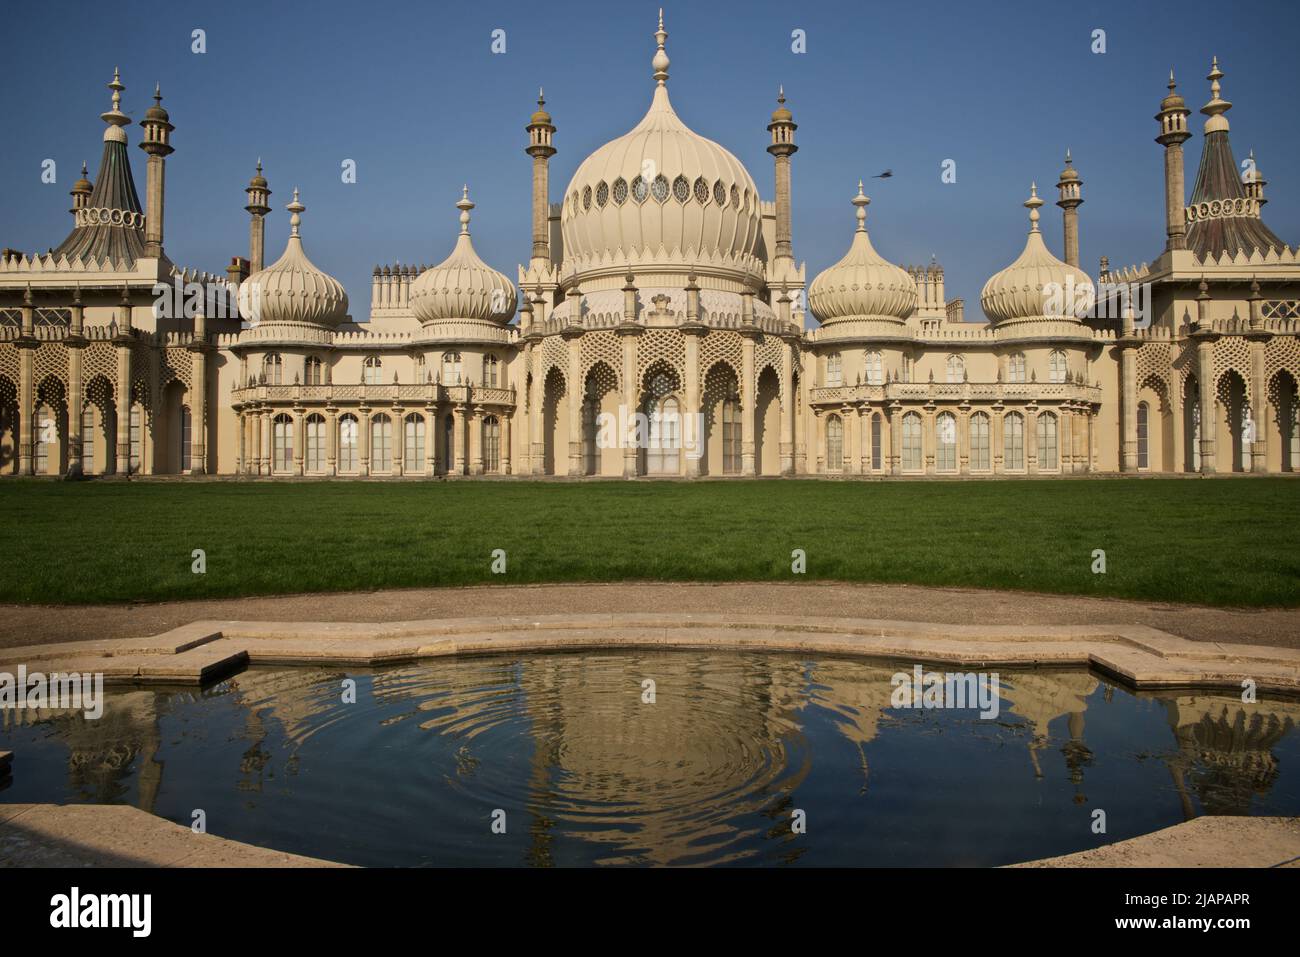 Pavillon royal de Brighton, Brighton. Brighton, East Sussex, Angleterre, Royaume-Uni. Reflet du Pavillon royal dans l'étang. Indo-Saracenic Revival. Banque D'Images